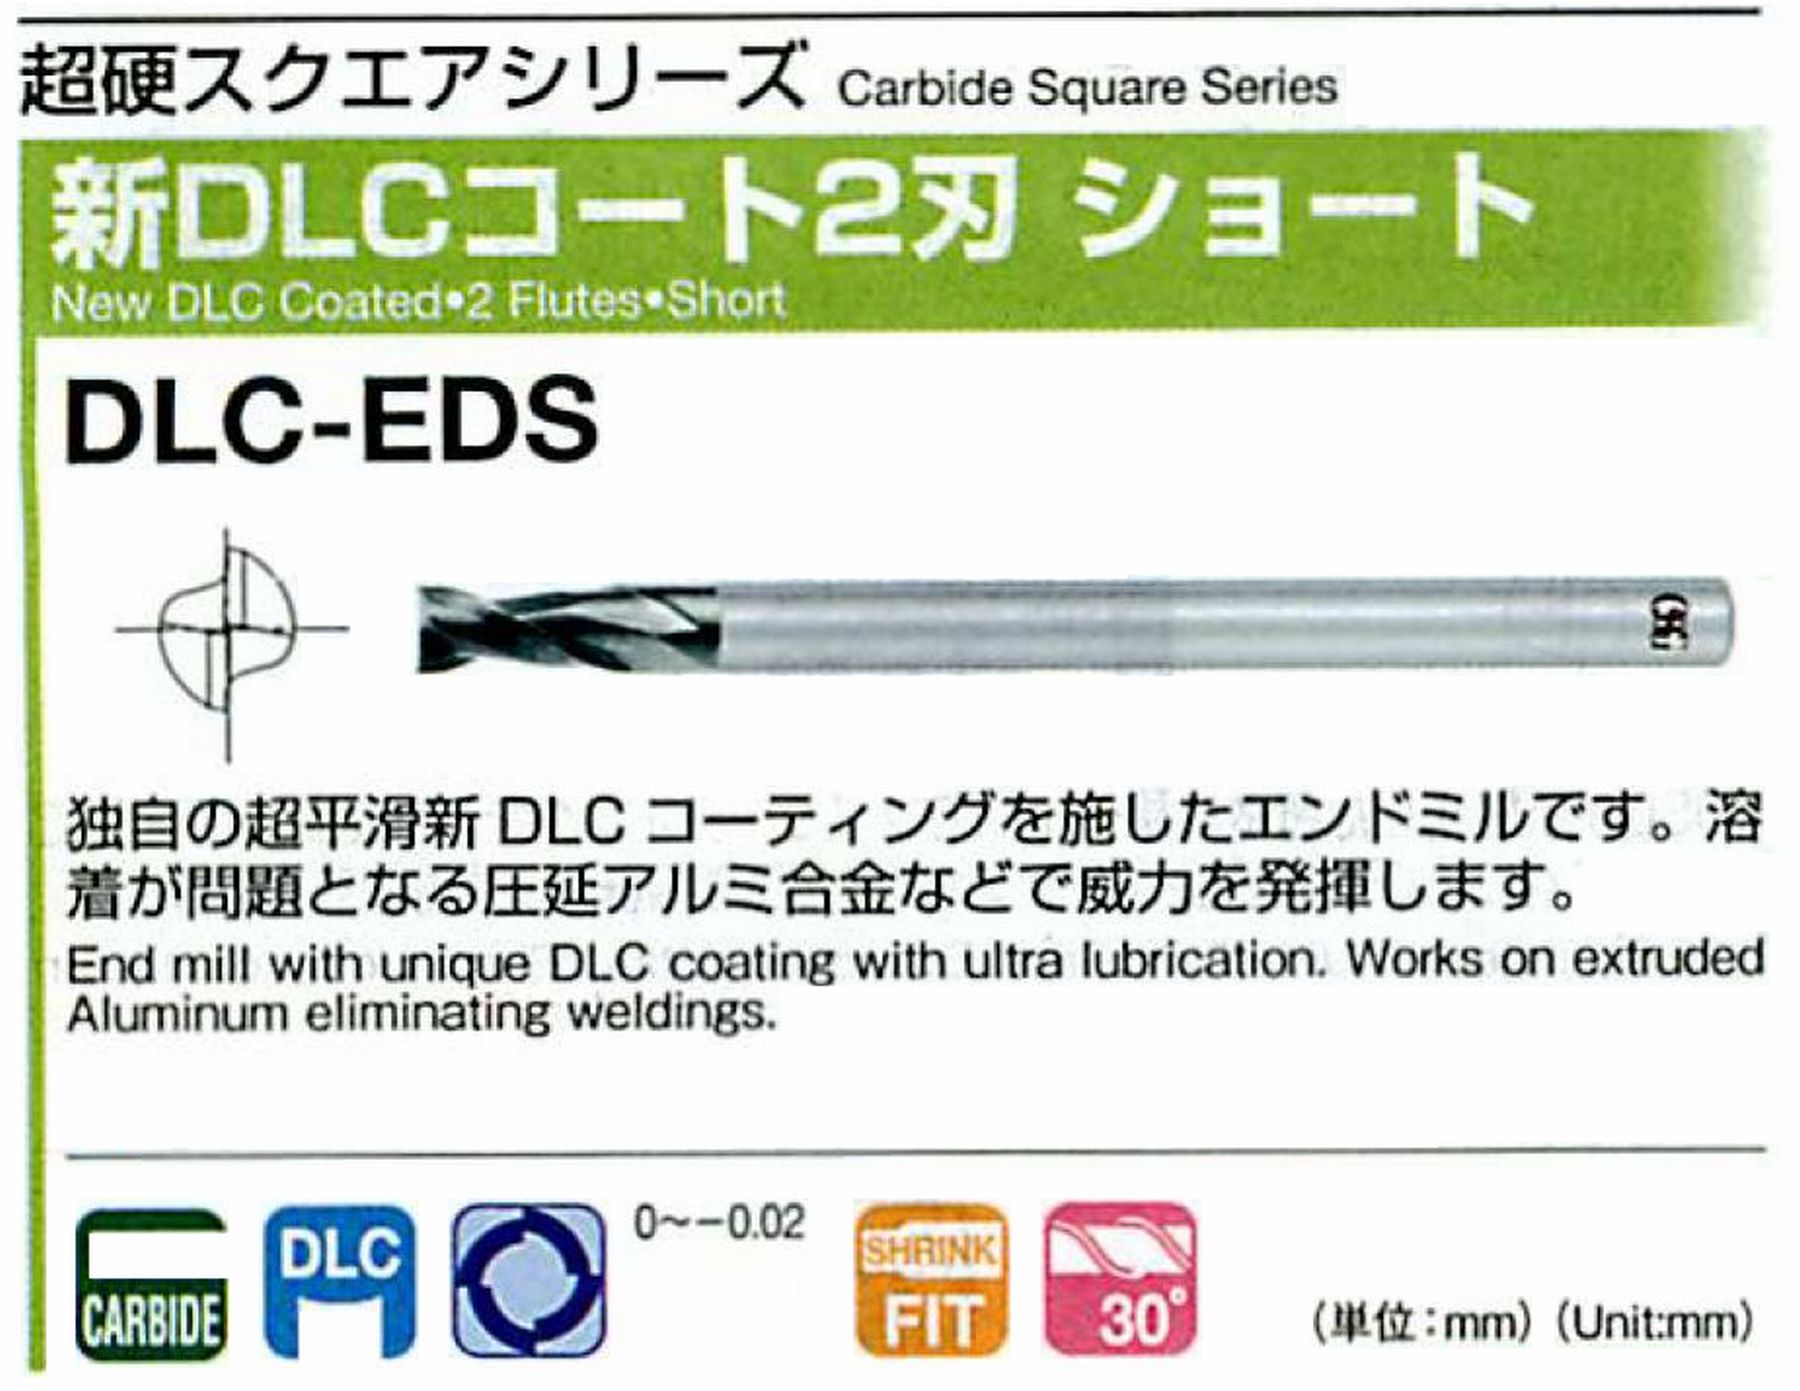 オーエスジー/OSG 新DLCコート 2刃ショート DLC-EDS 外径0.5 全長40 刃長1 シャンク径4mm